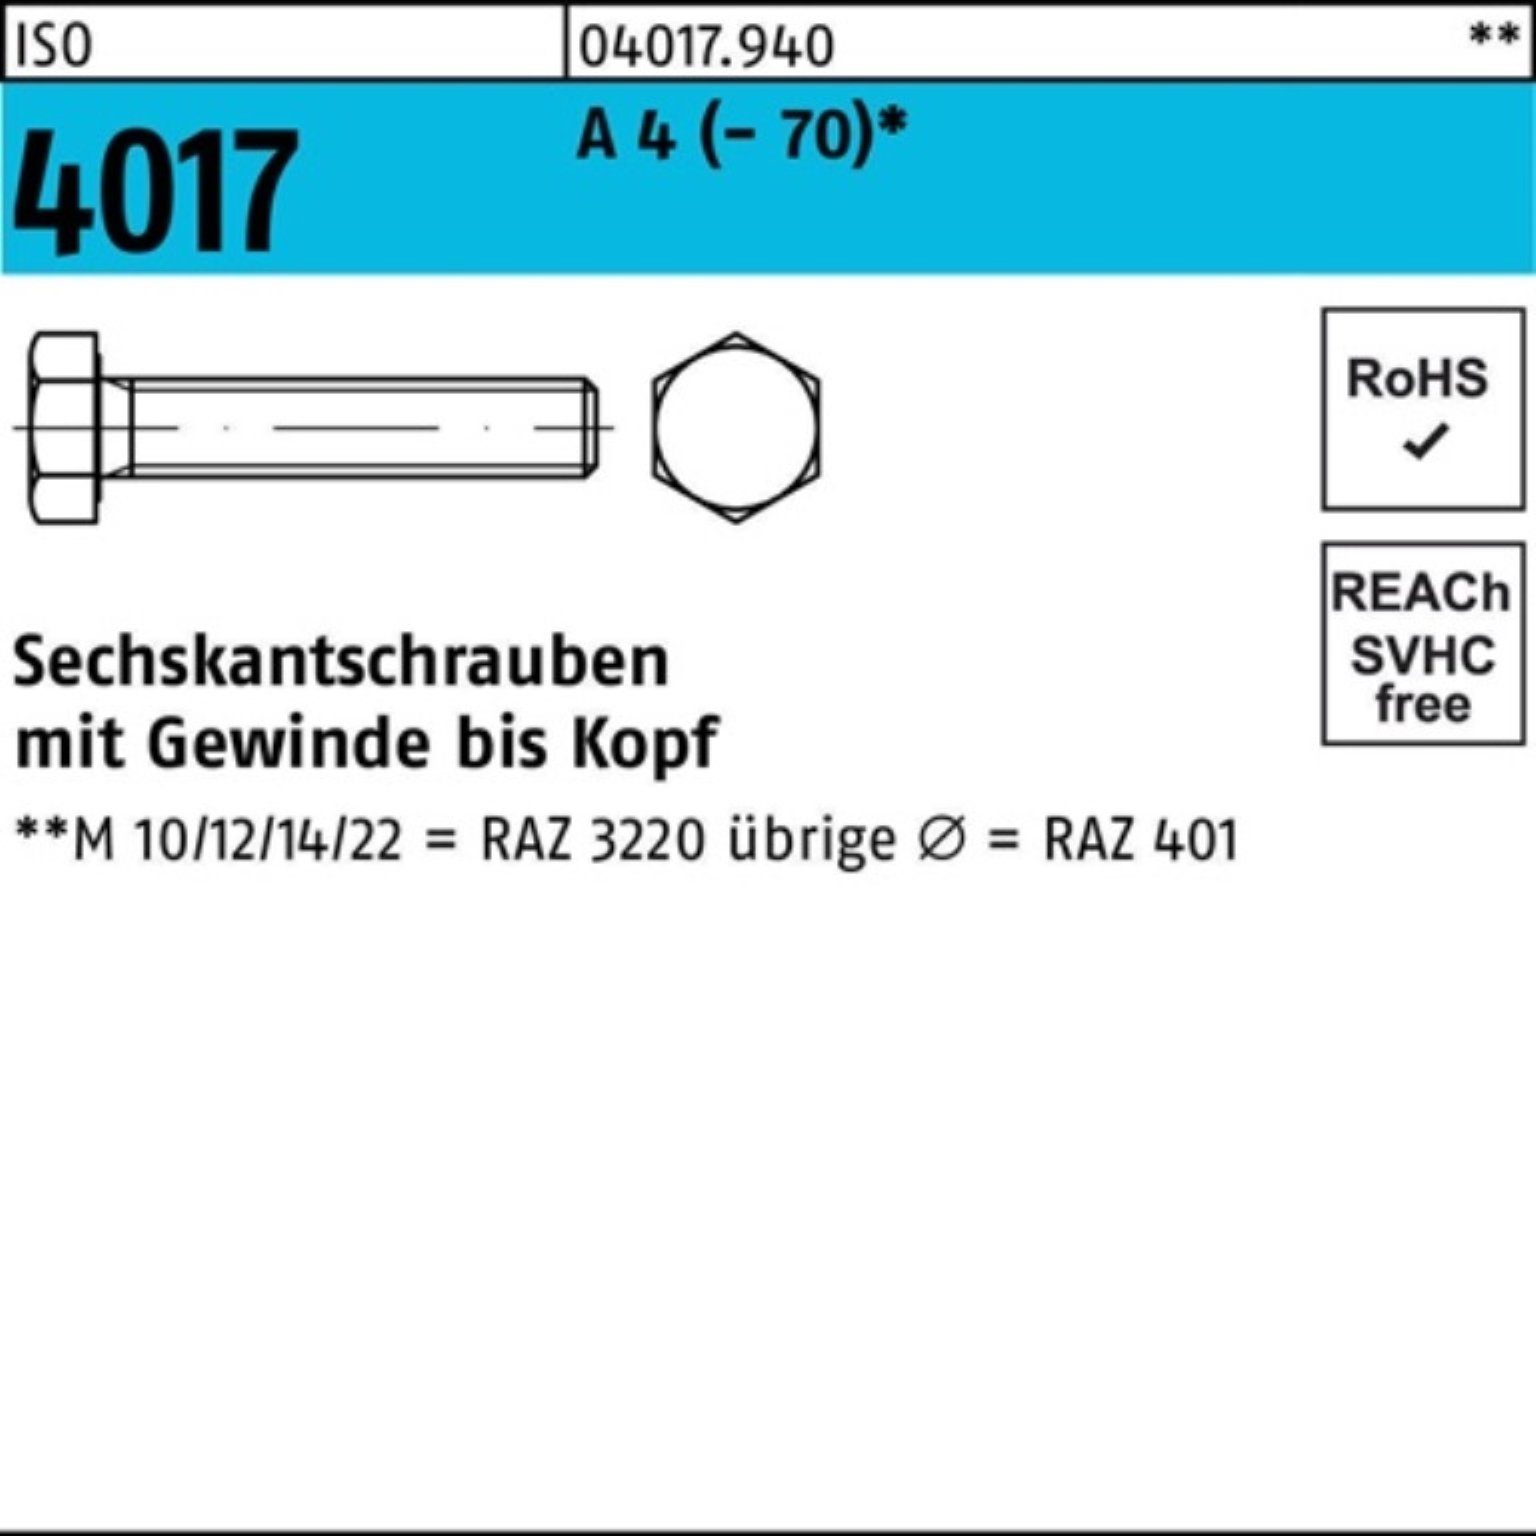 Bufab Sechskantschraube 100er Pack Sechskantschraube ISO 4017 VG M6x 55 A 4 (70) 100 Stück